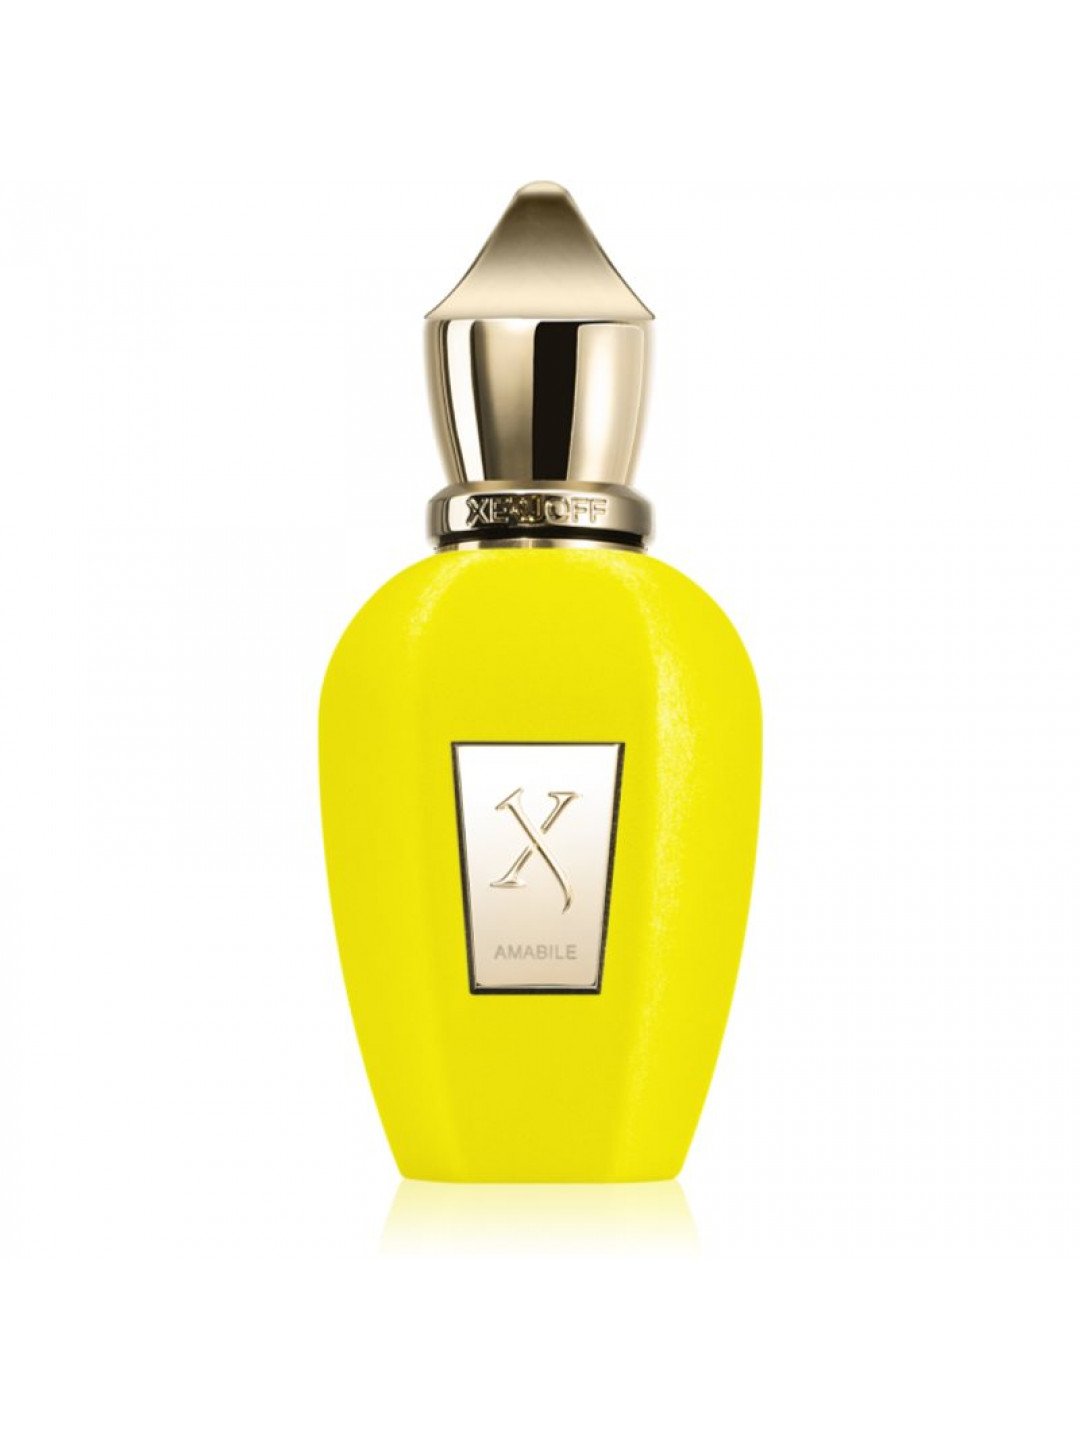 Xerjoff Amabile parfémovaná voda unisex 50 ml